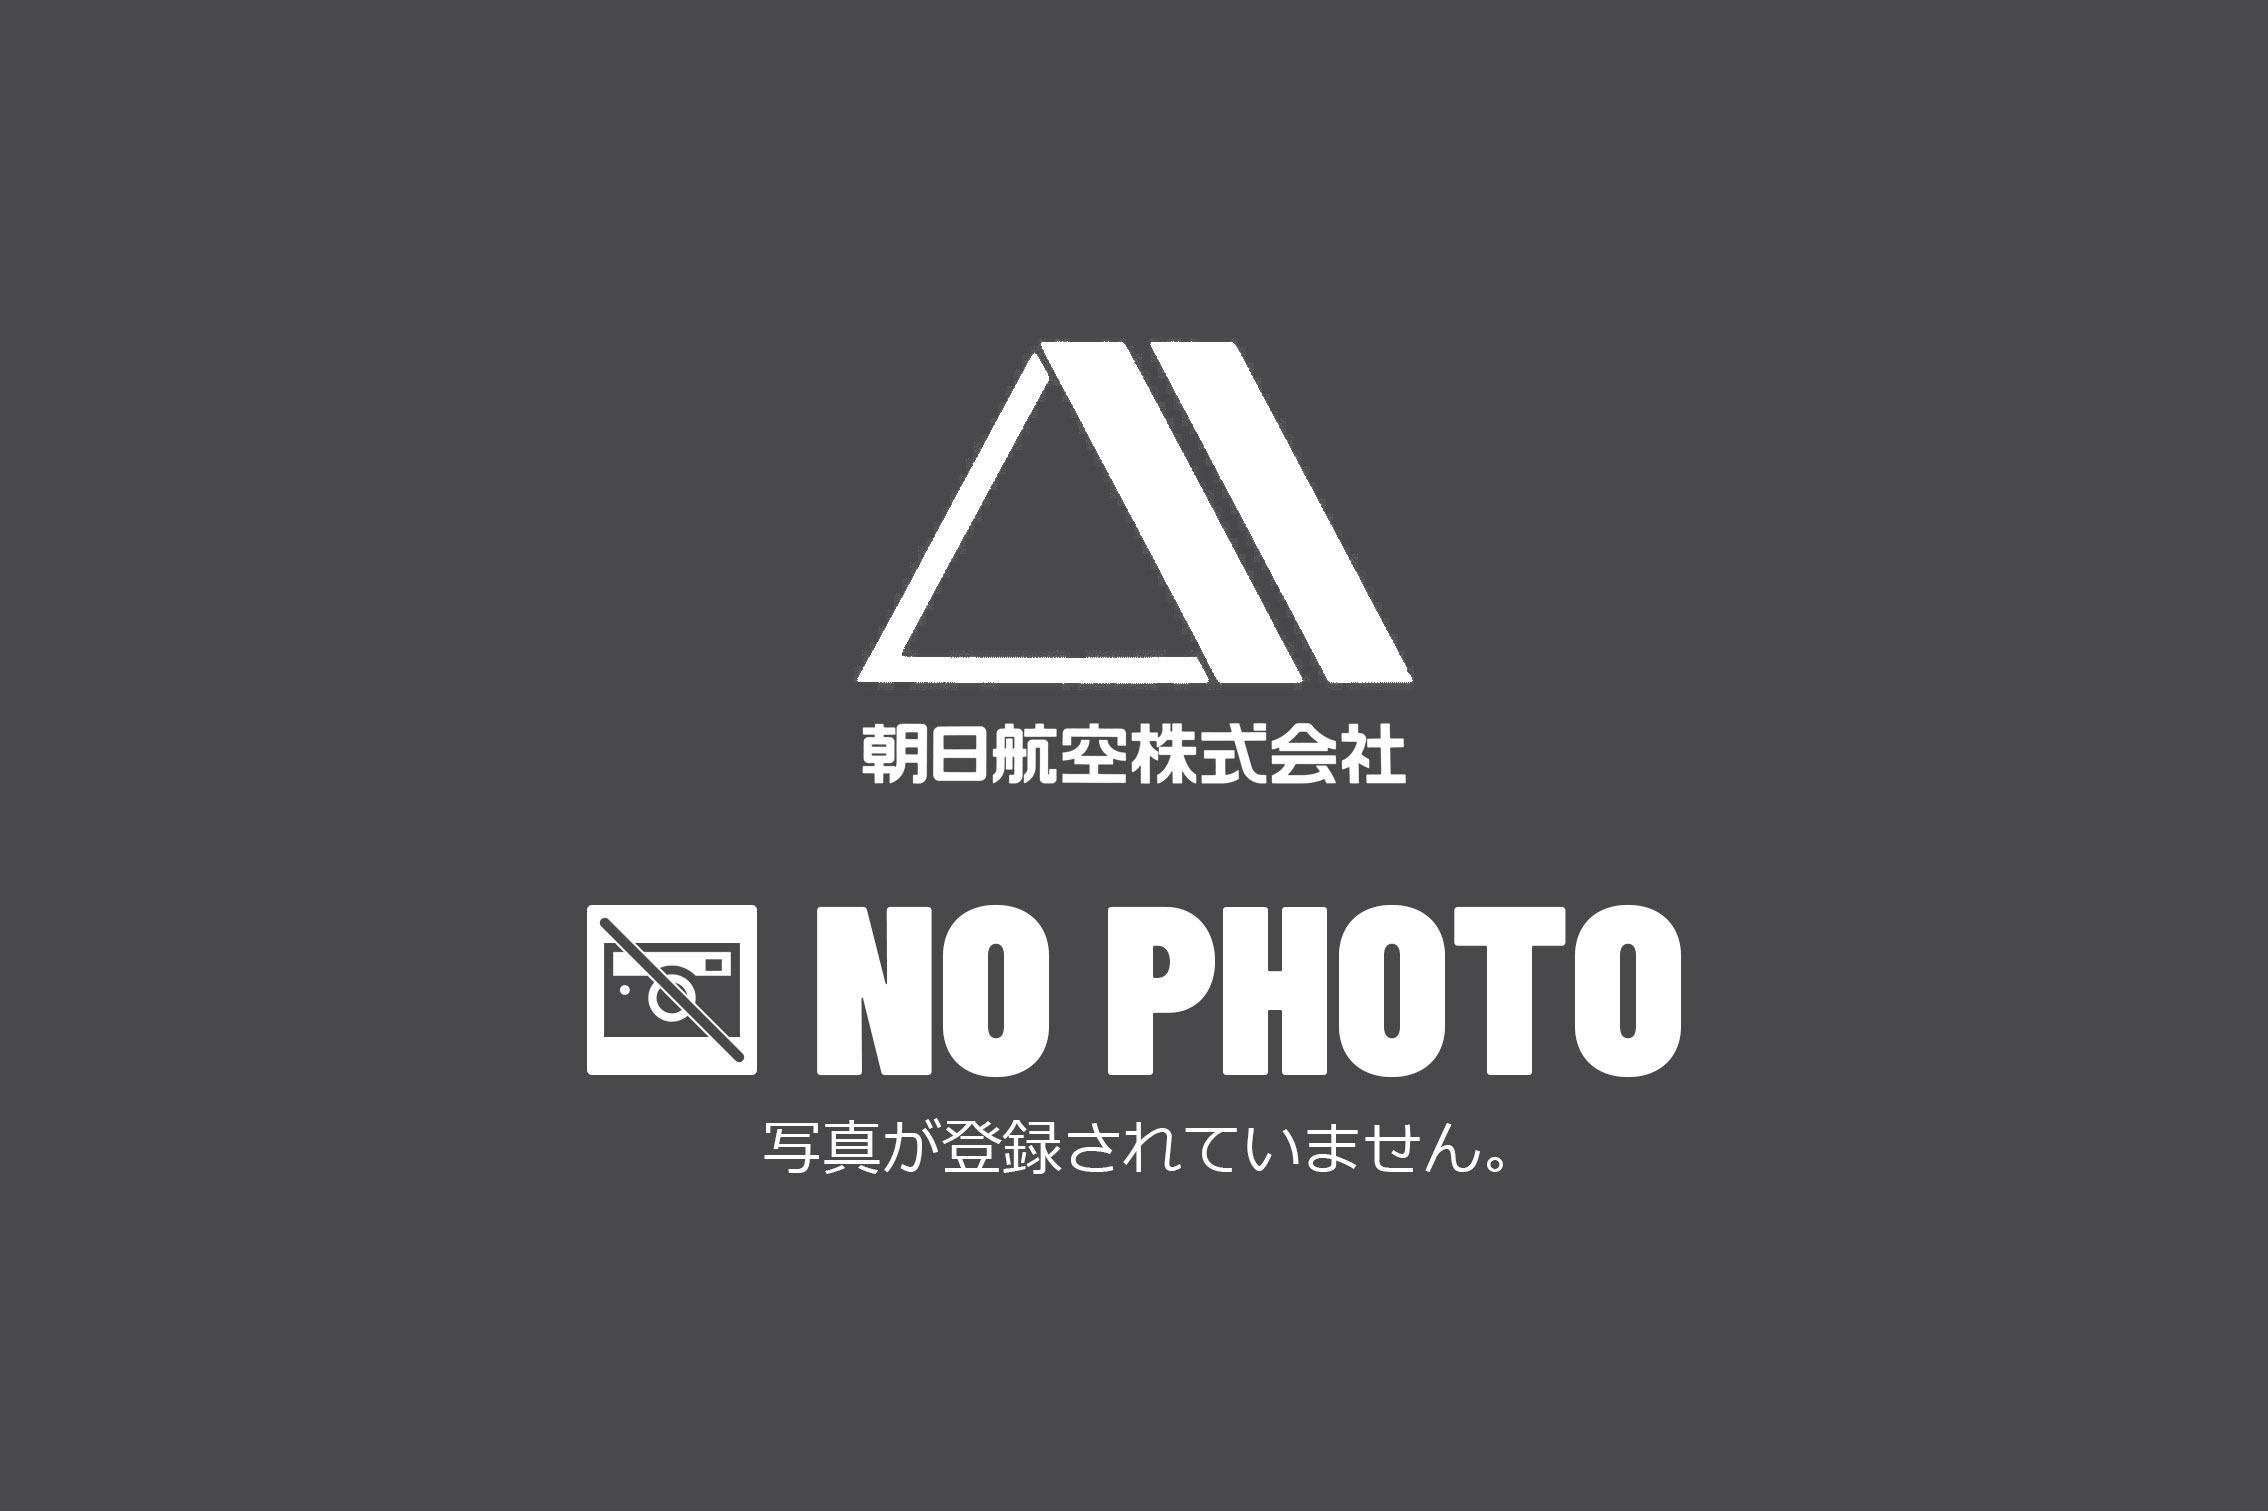 NO PHOTO